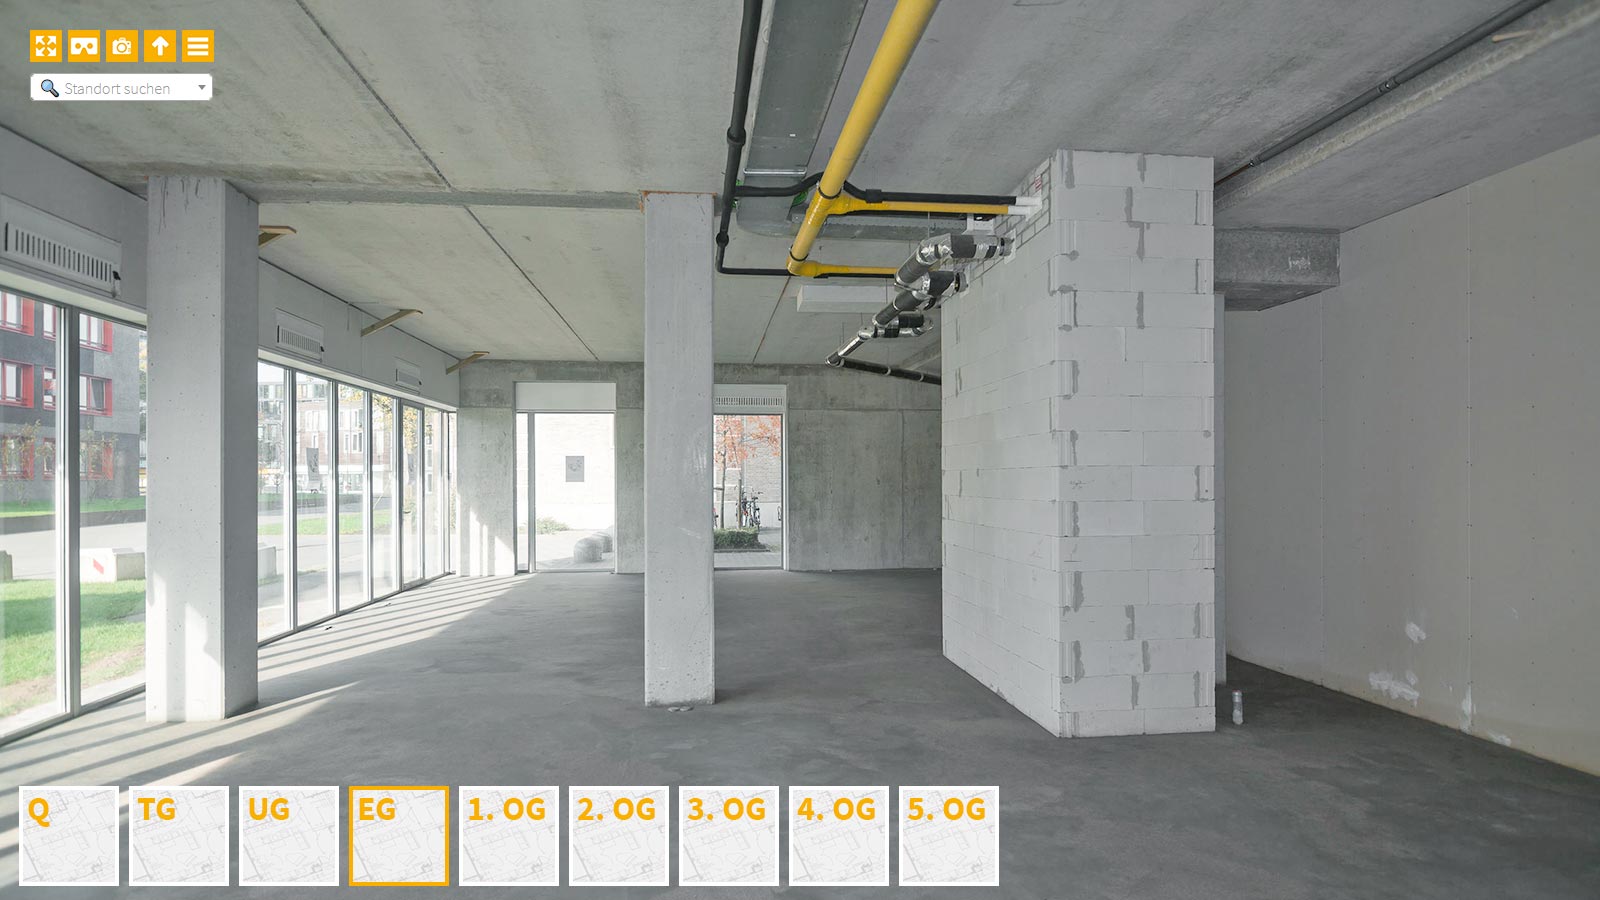 Baudokumentation 360 Grad bei gestörten Projekten in 


	


	


	


	


	


	


	


	


	


	Dortmund









, Bilddokumentation als virtueller Rundgang